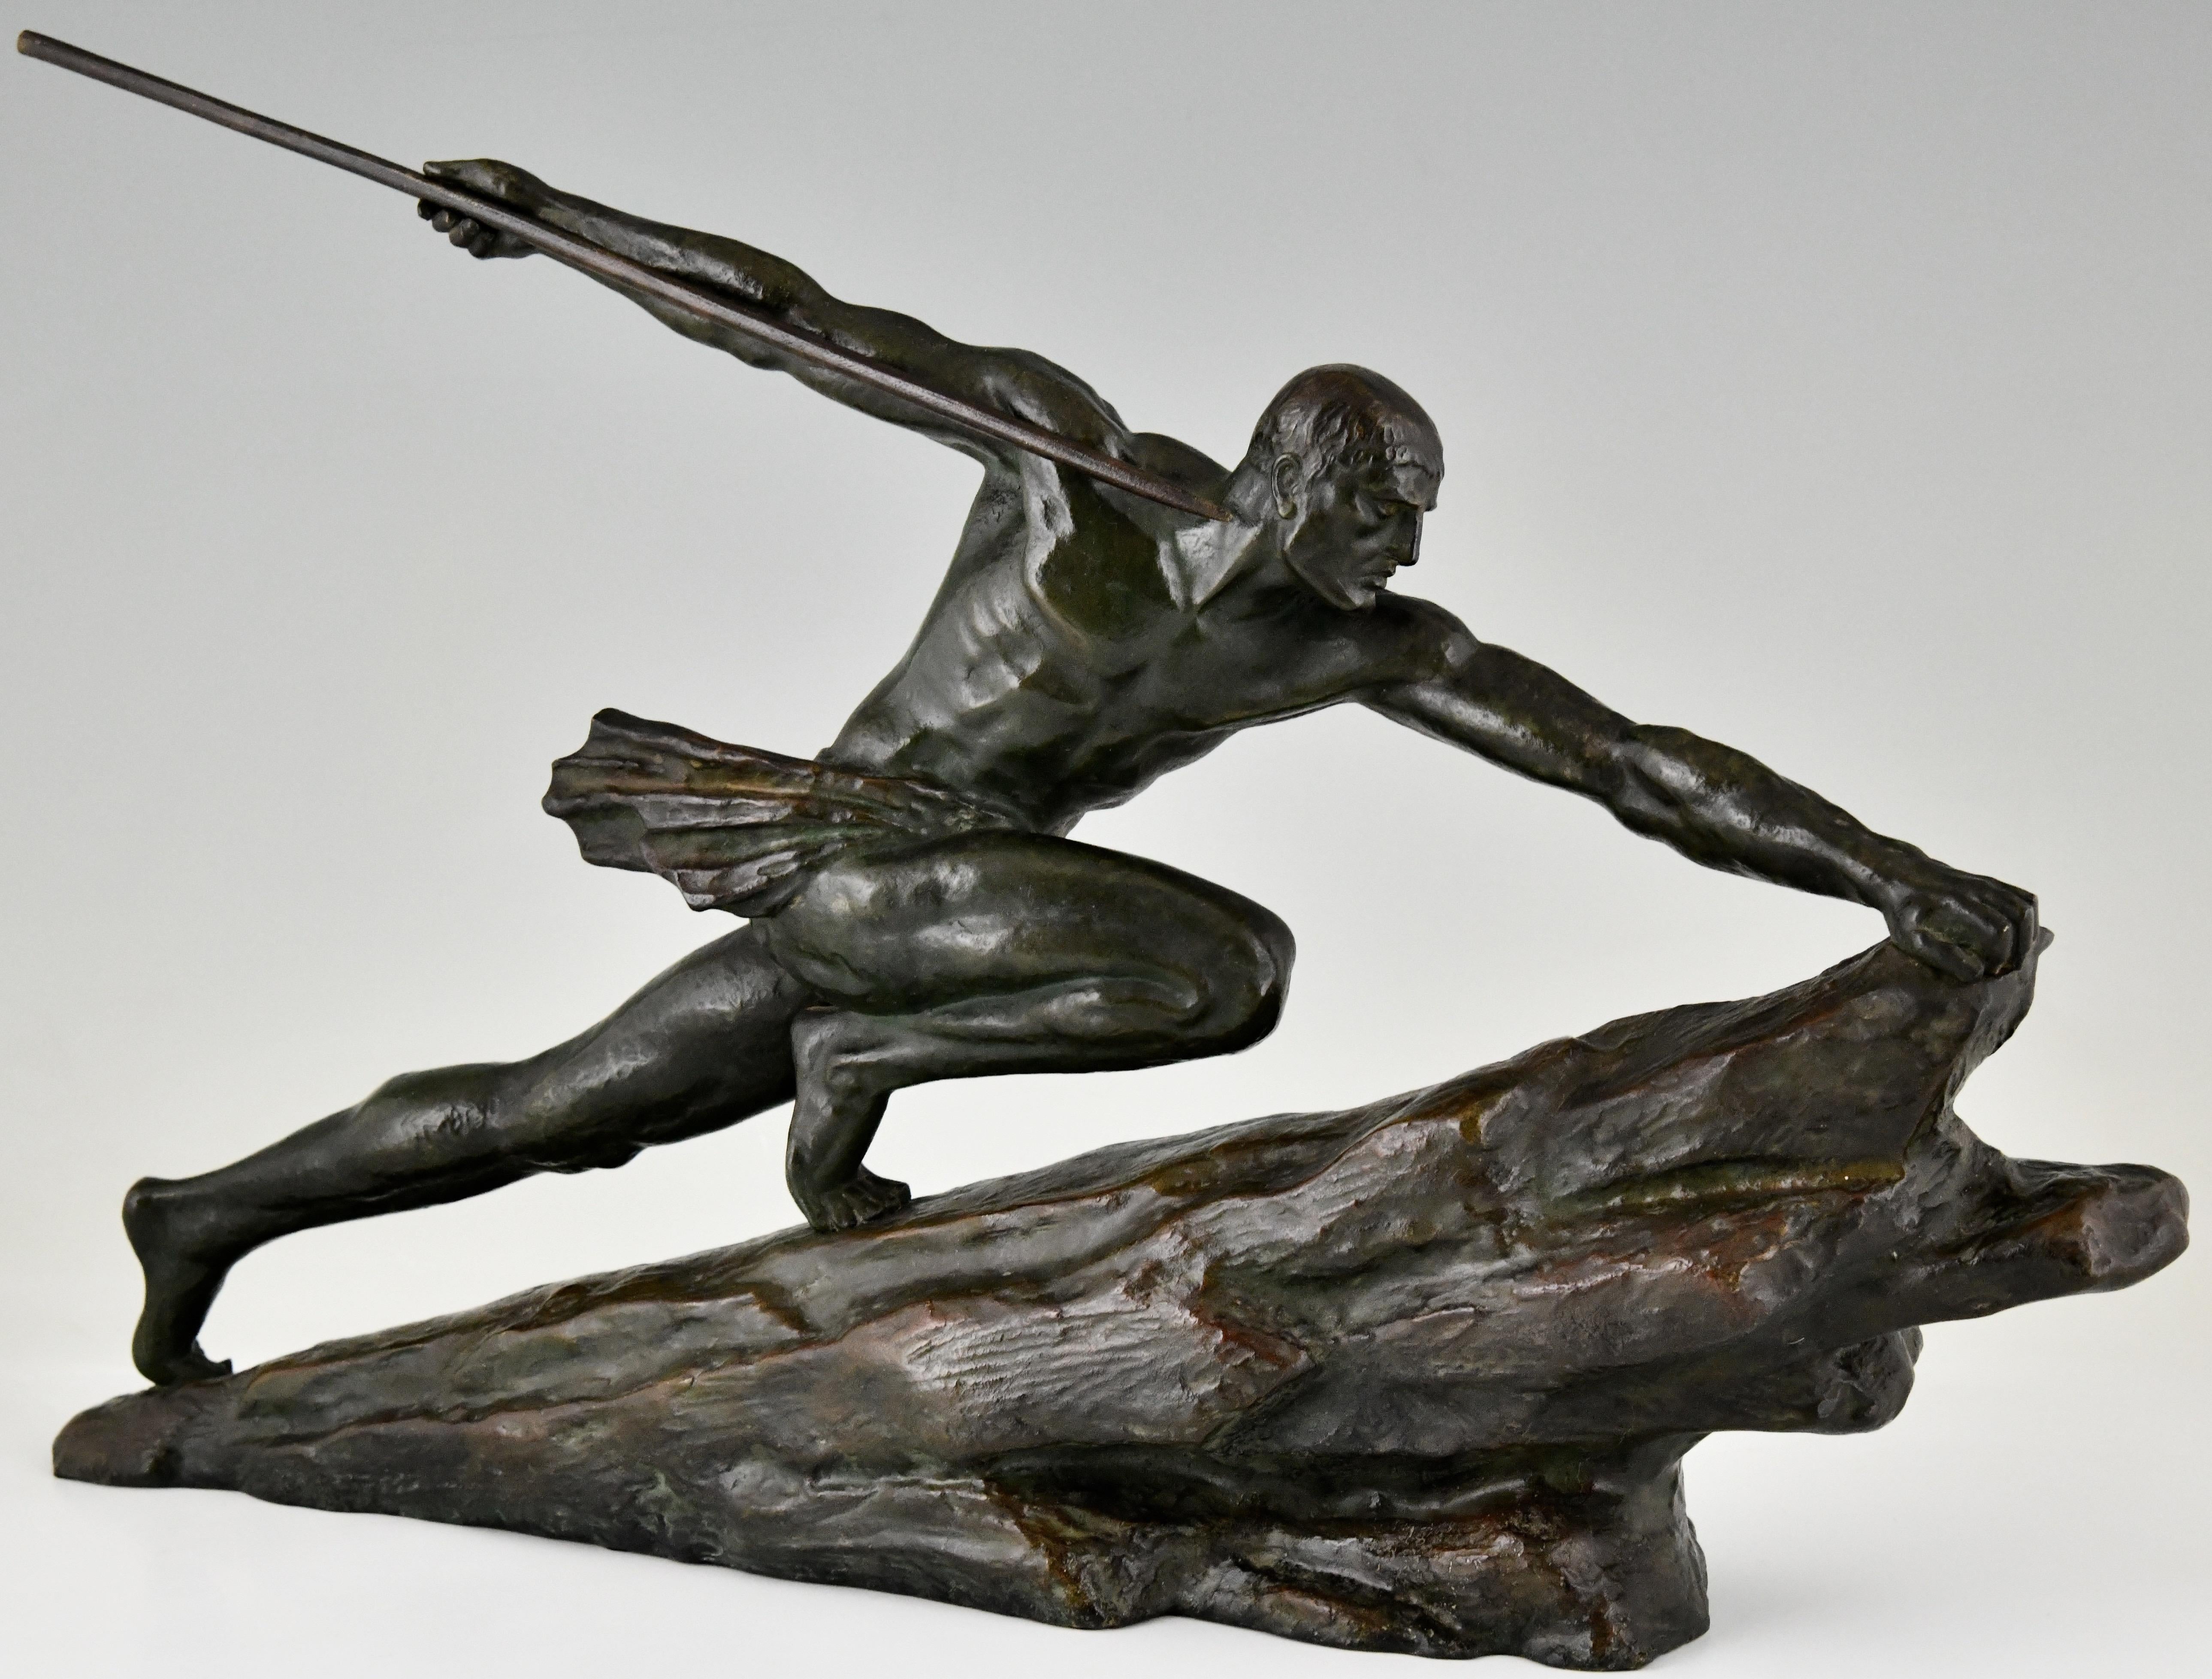 Sculpture en bronze Art Déco d'un athlète avec une lance signée par Pierre Le Faguays. 
La sculpture présente une riche patine verte avec des nuances de brun.
France 1927.
Ce bronze est illustré à la page 425 du livre : Bronzes, sculpteurs et